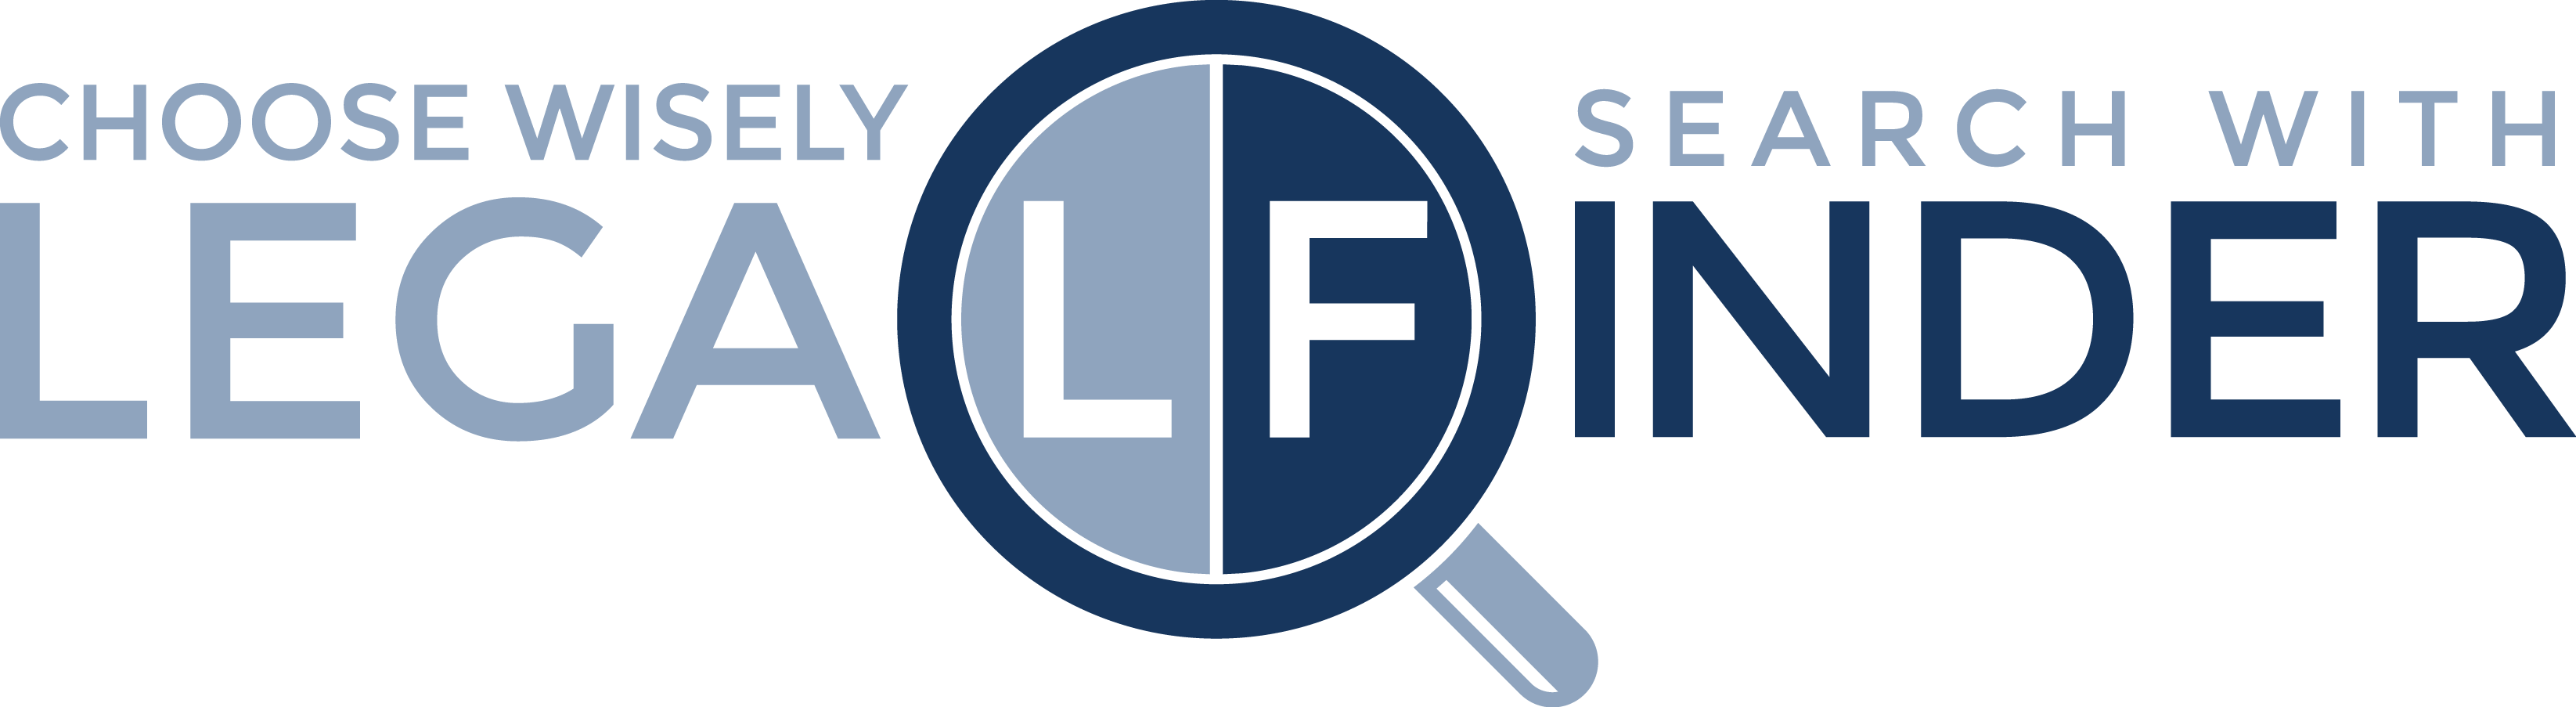 legalfinder logo